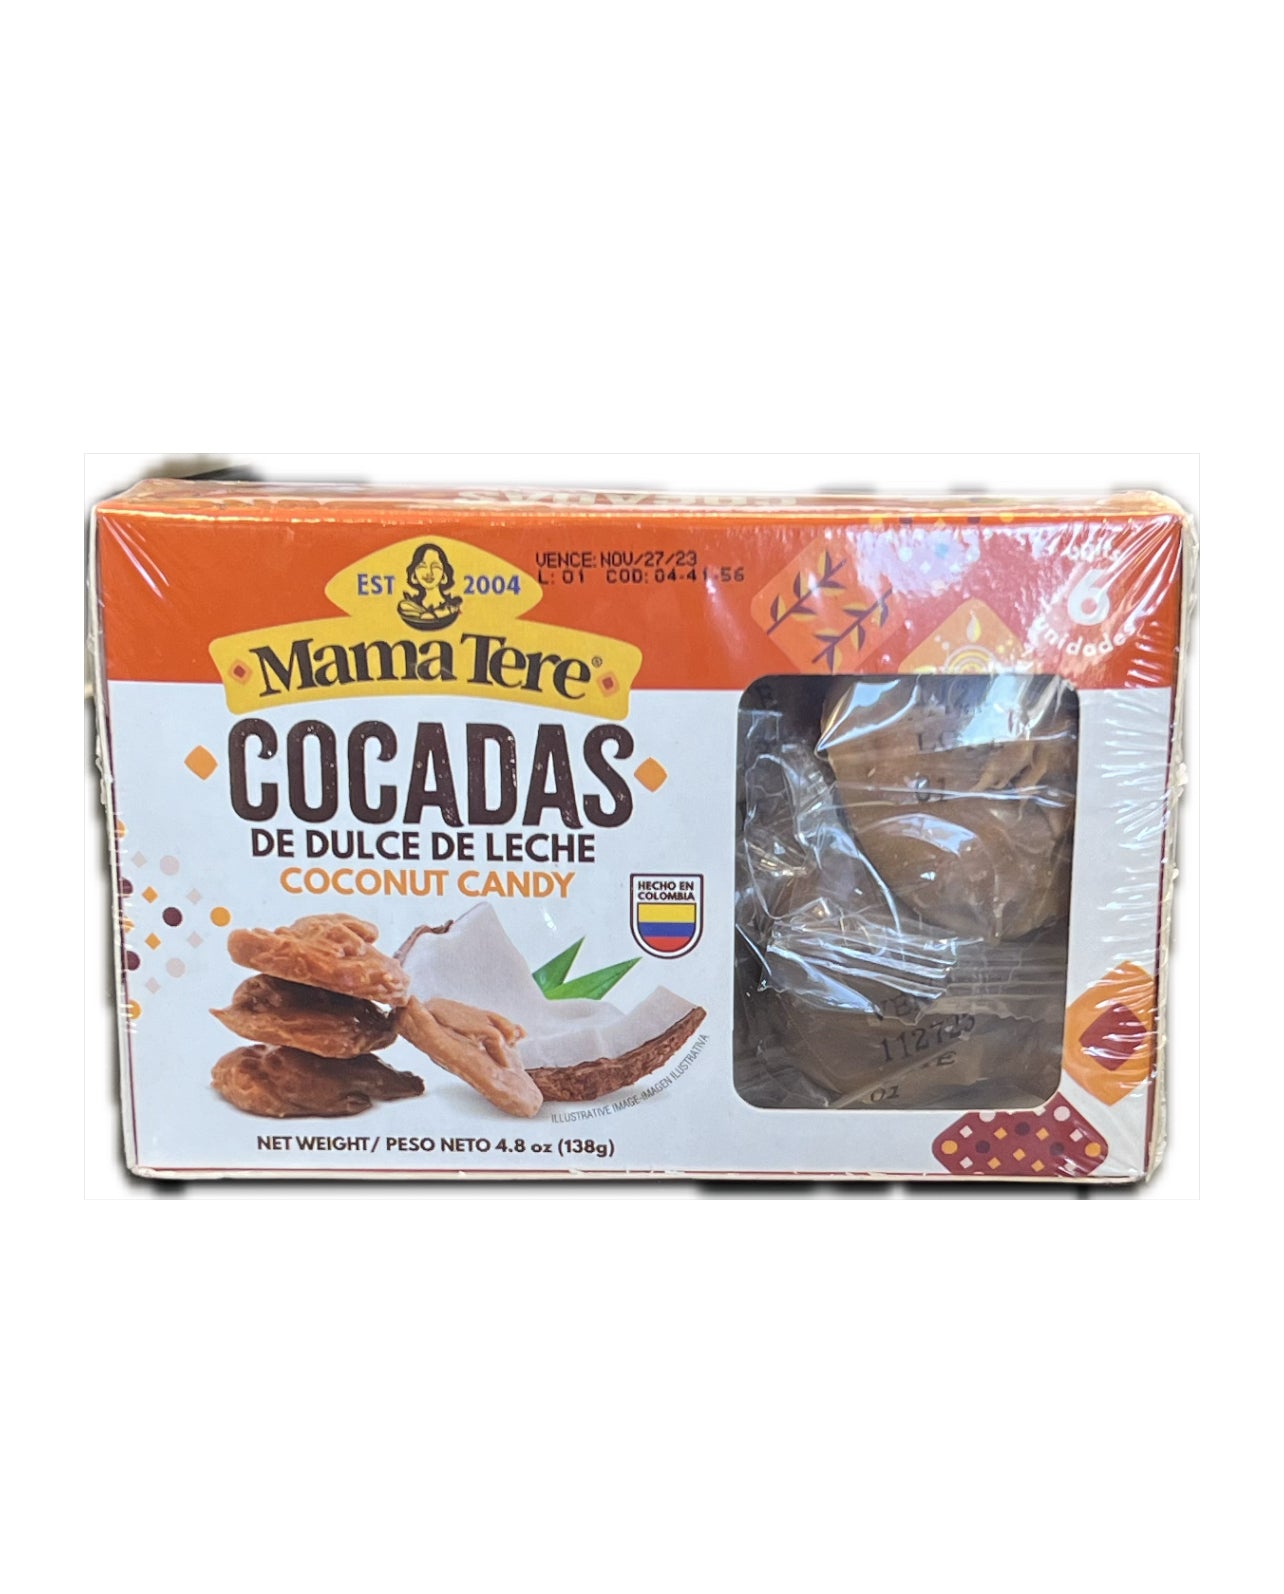 Mama Tere Cocadas Dulce de Leche Coconut Candy 138gr